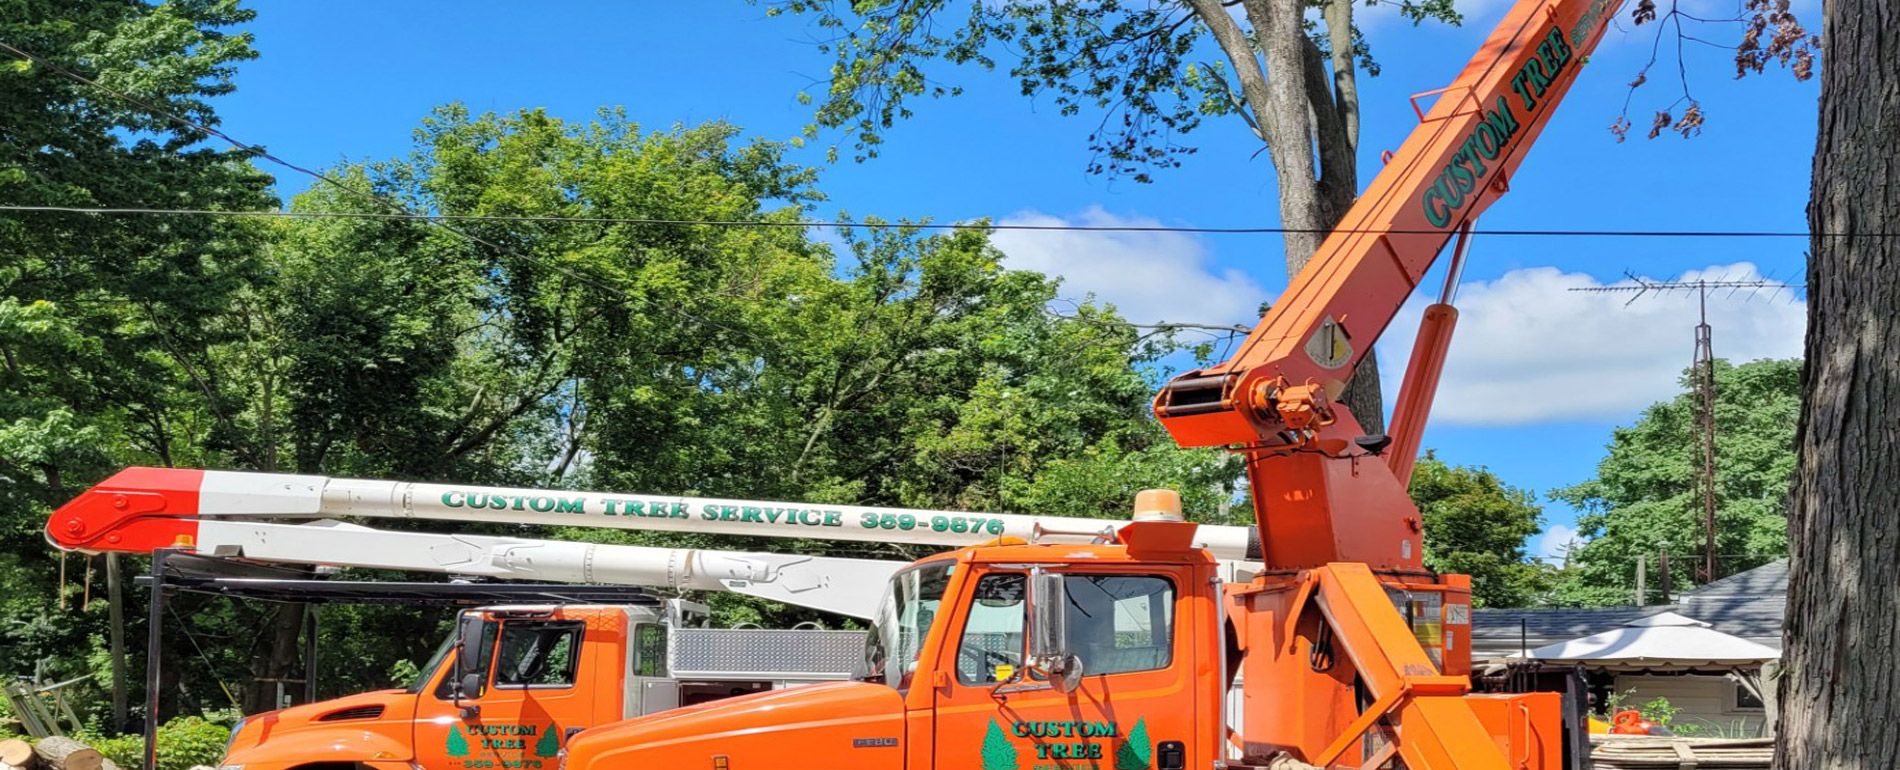 Tree Crane Services